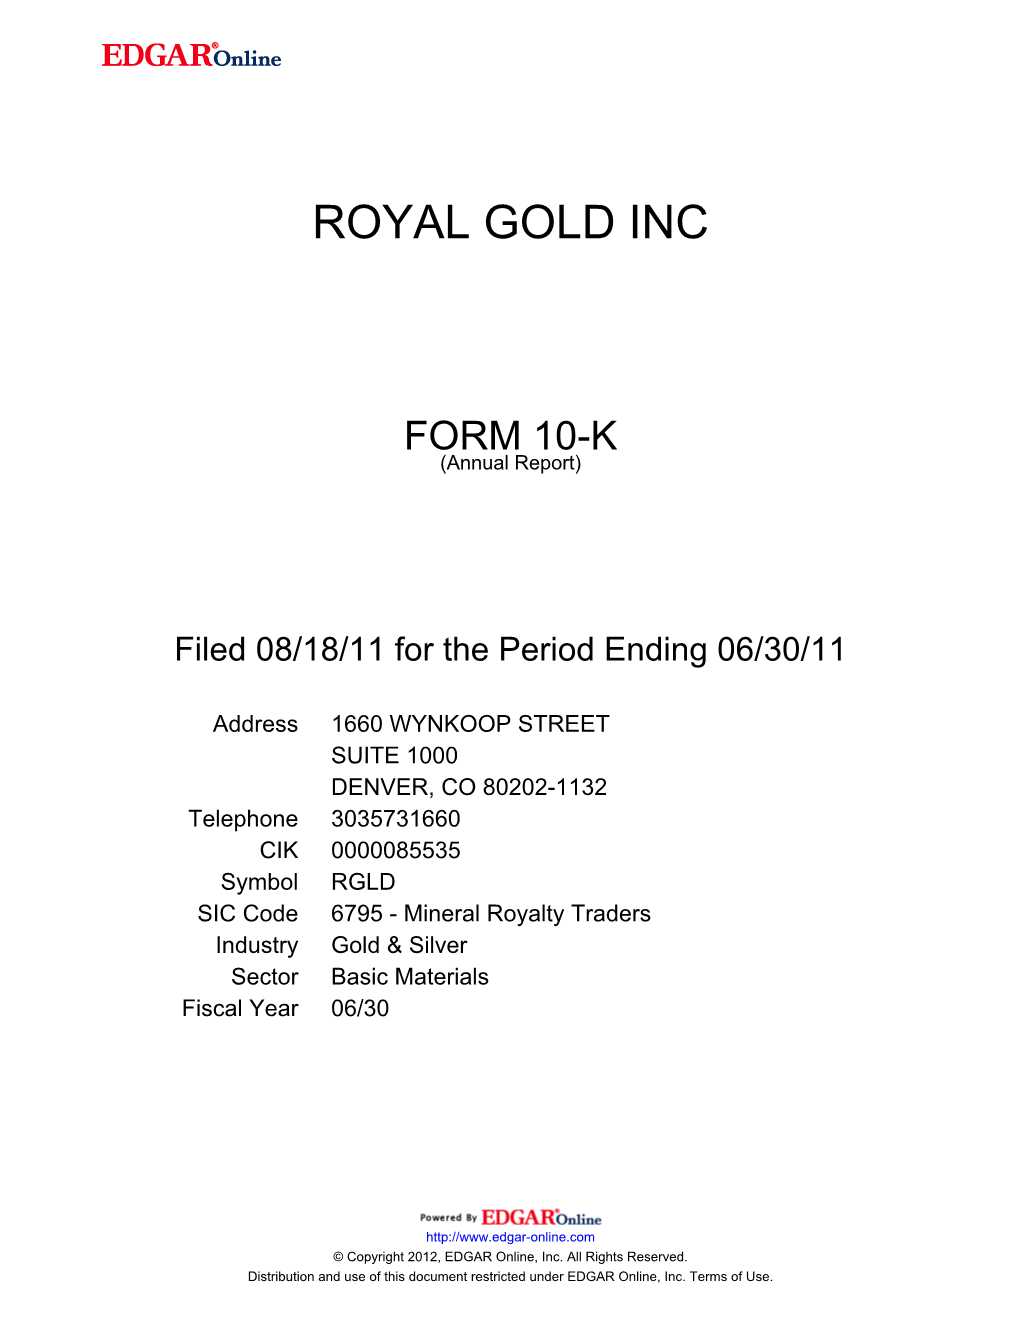 Royal Gold Inc